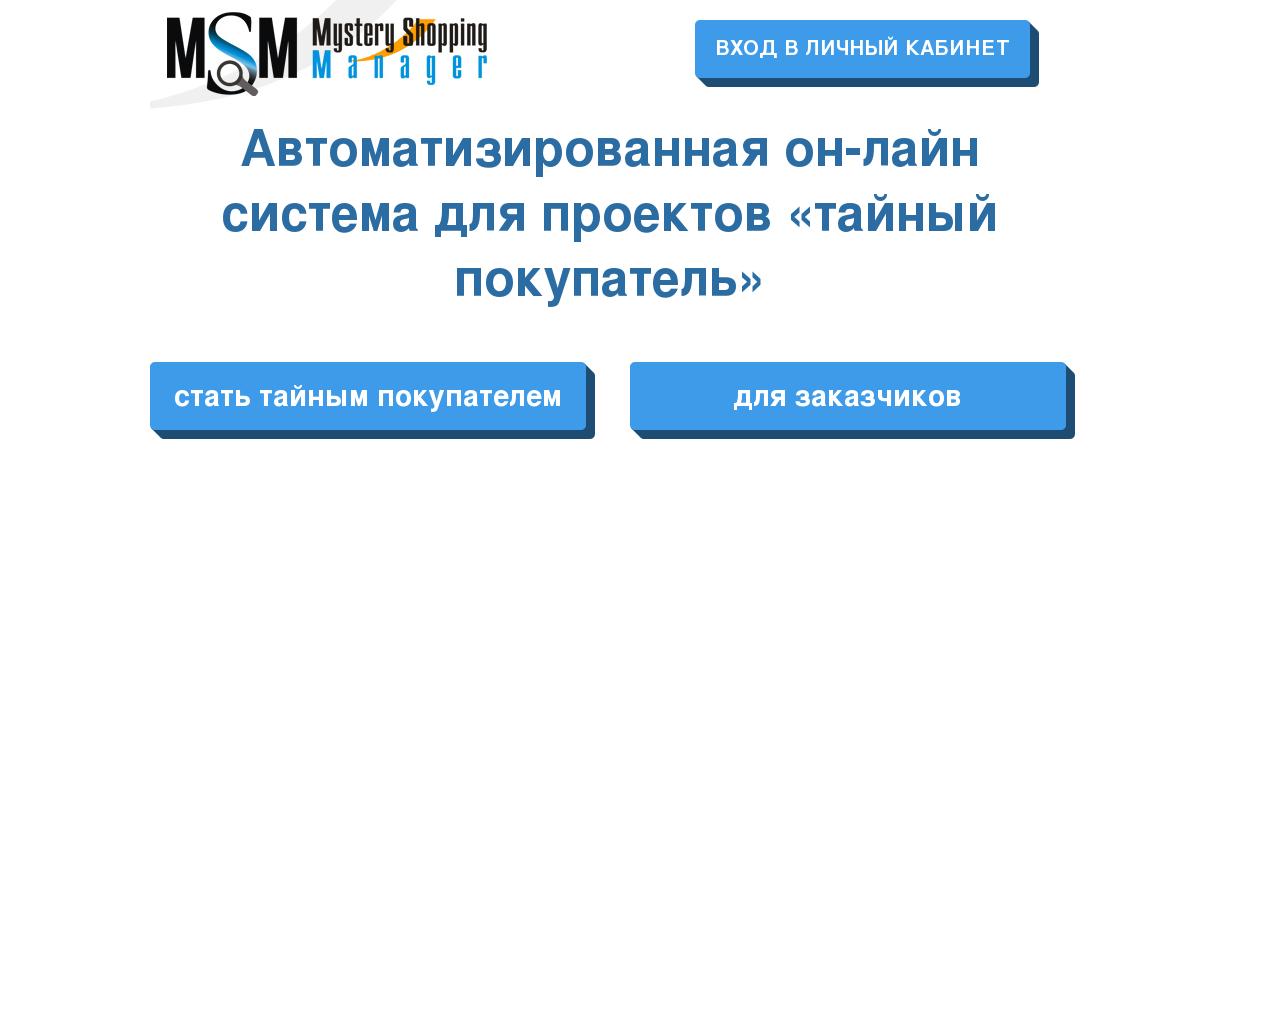 Изображение сайта msmanager.ru в разрешении 1280x1024